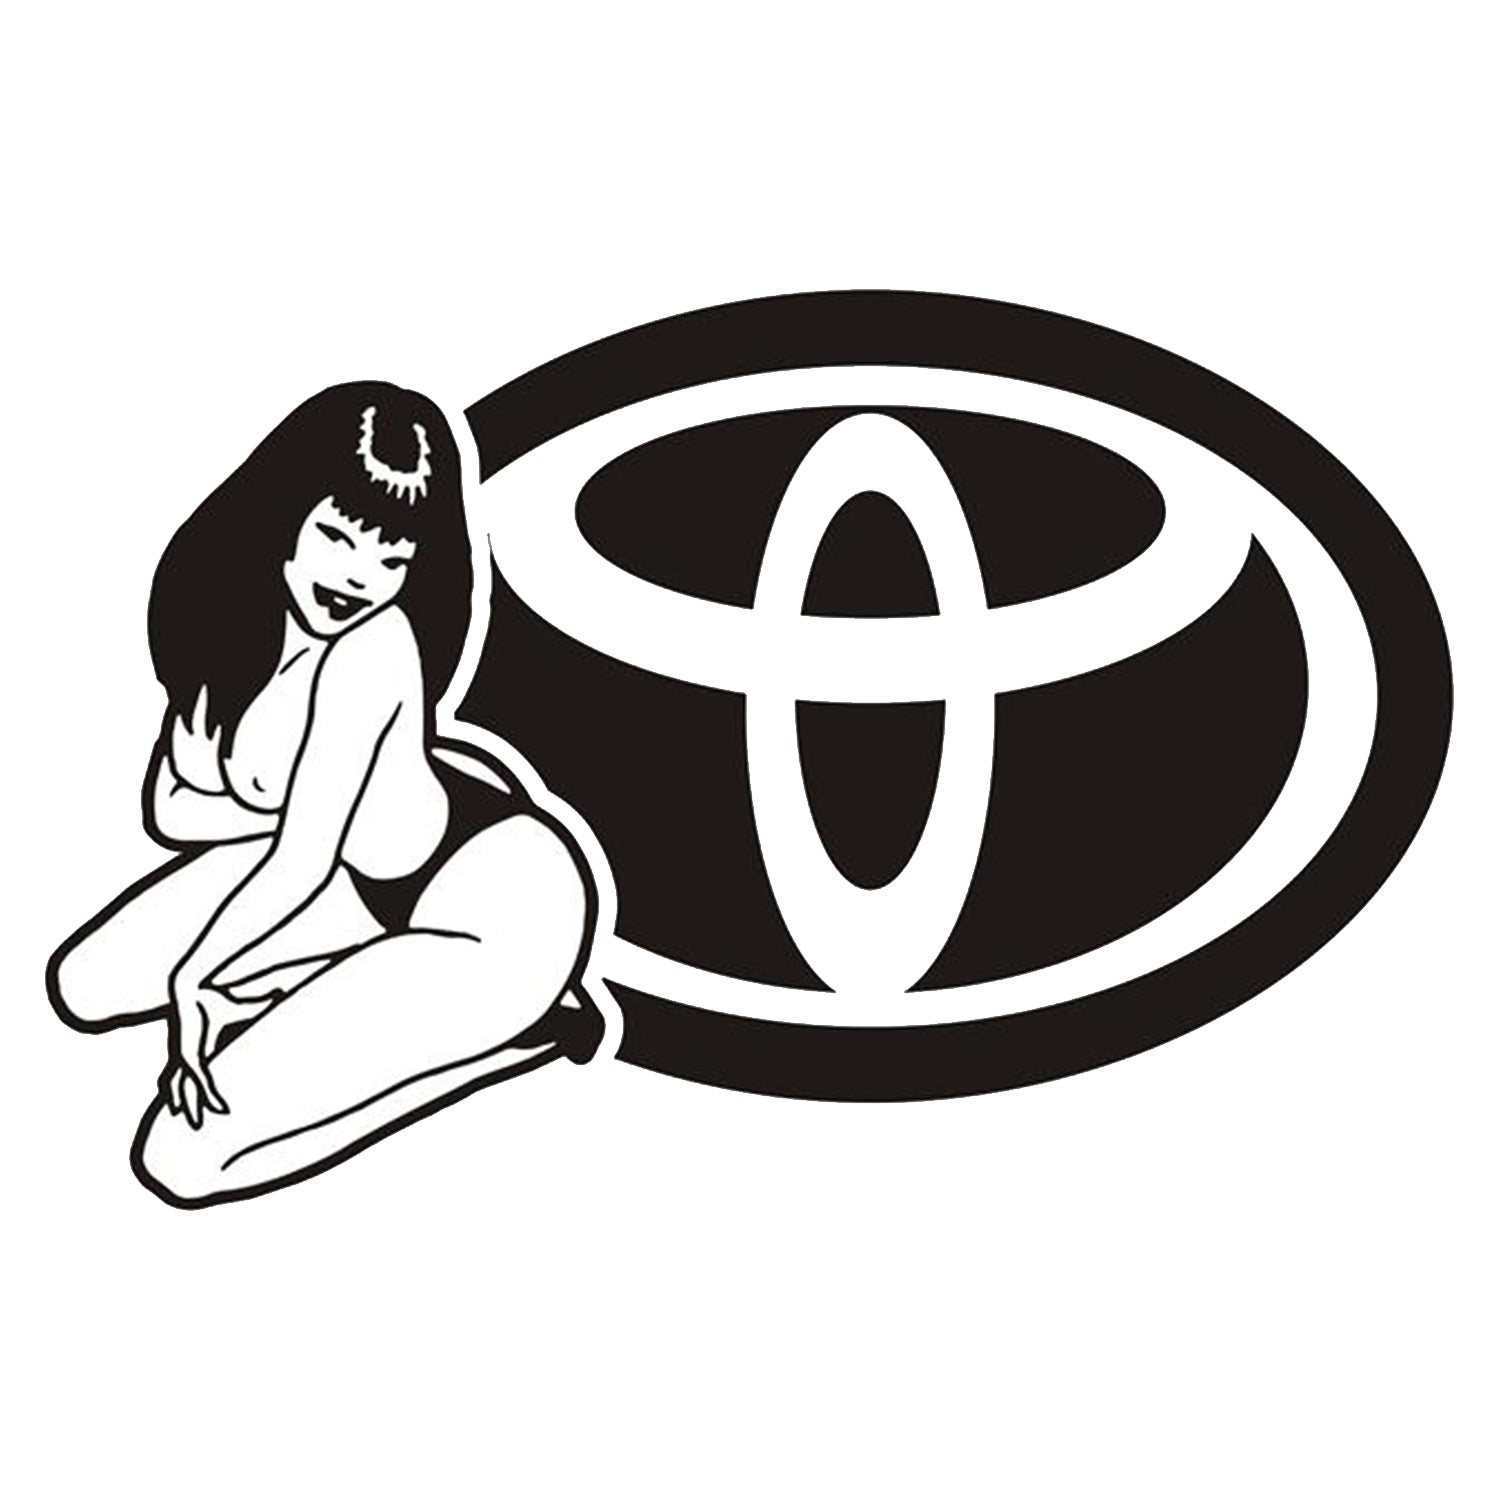 Sticker Toyota Girl V2